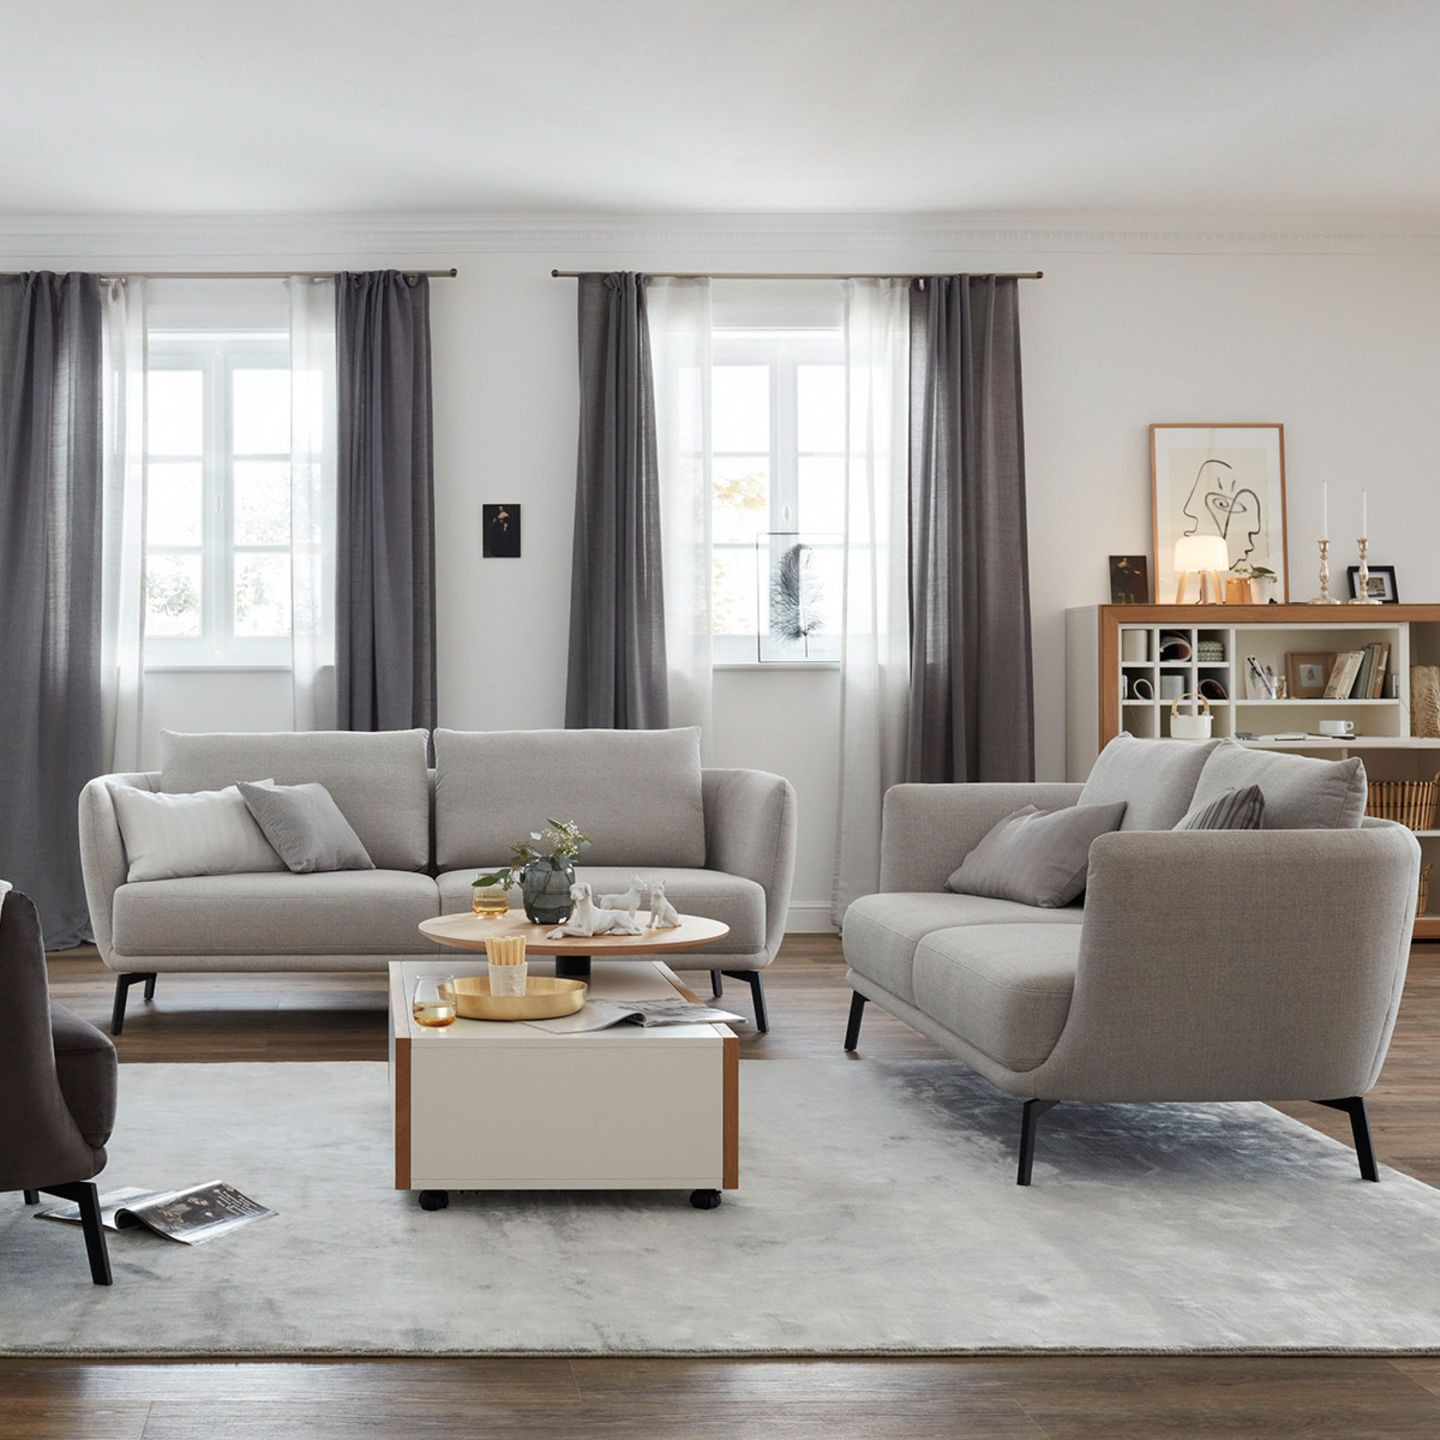 Wohnzimmer In Grau Und Creme - [Schöner Wohnen] pertaining to Wohnzimmer Gestalten Grau